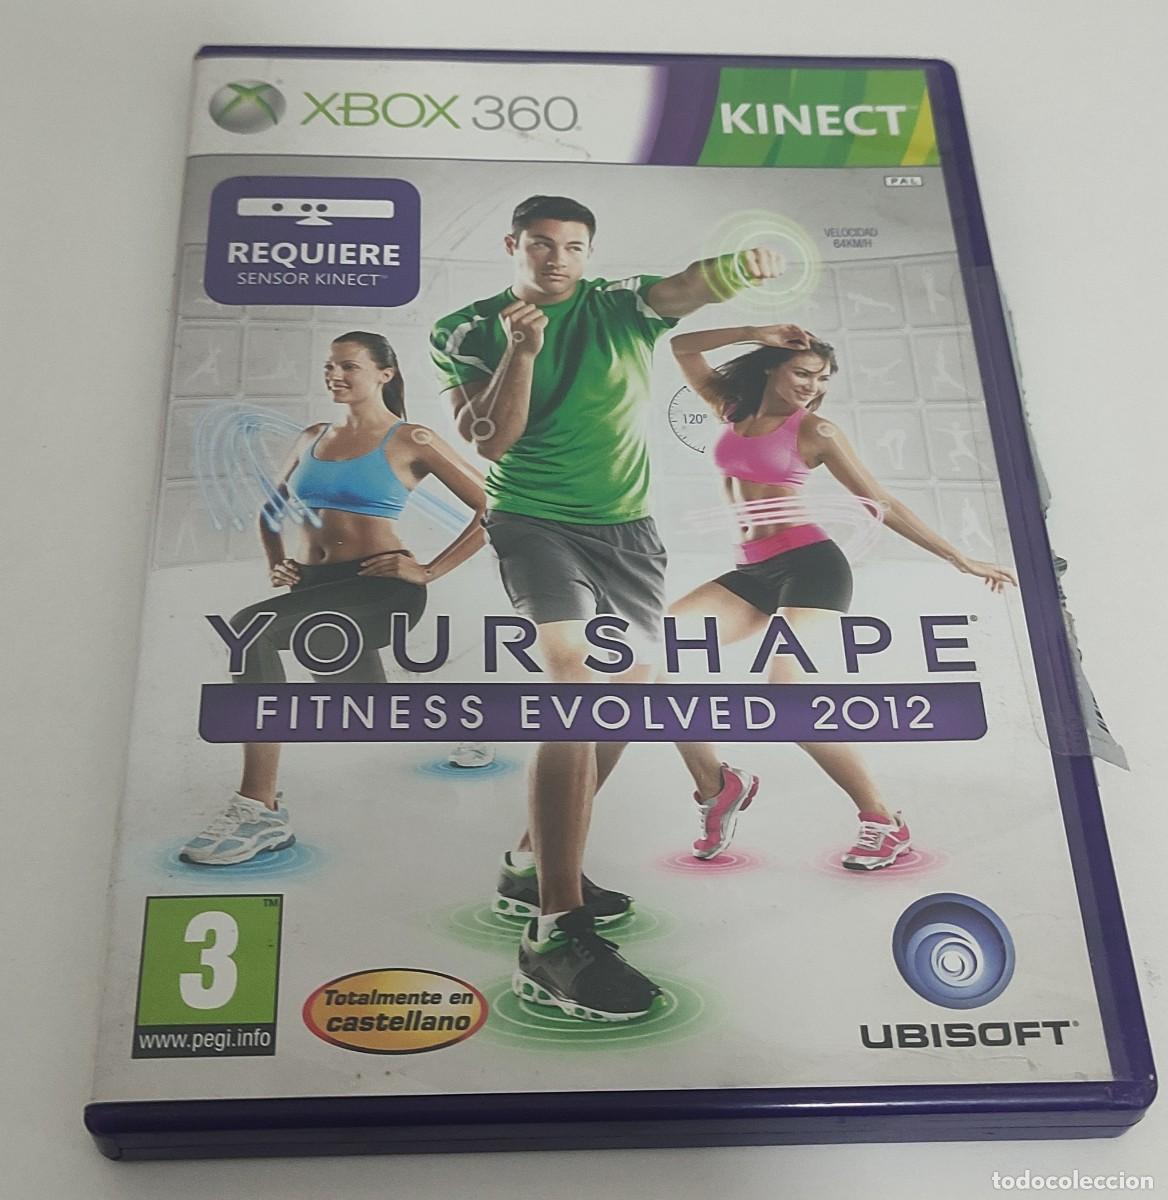 Jogo Your Shape Fitness Evolved 2012 Xbox 360 Ubisoft com o Melhor